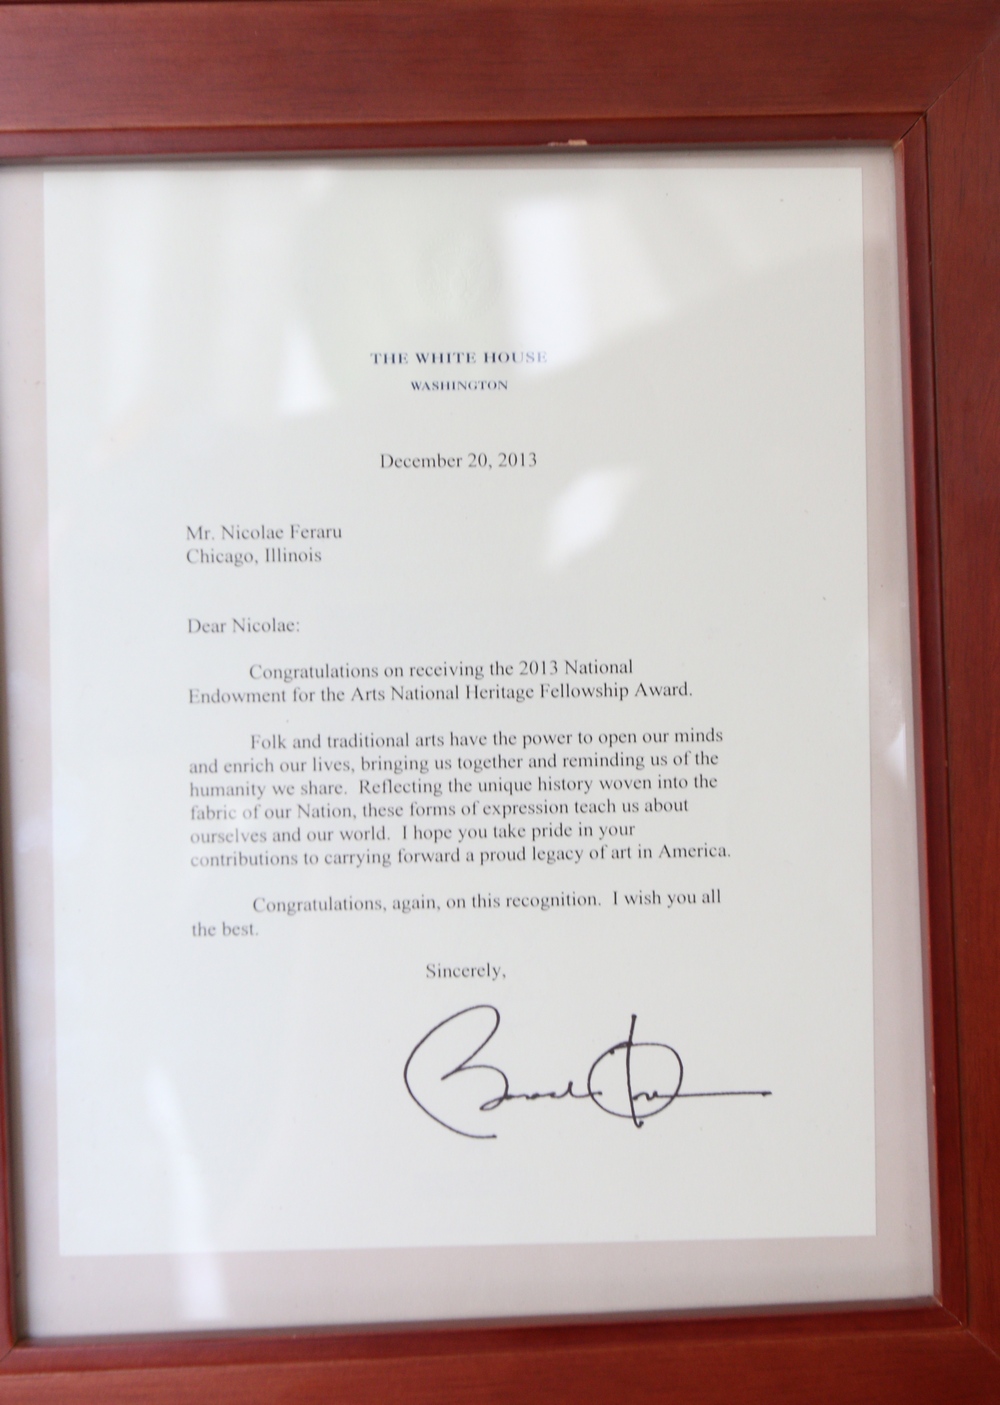 Scrisoarea pe care a primit-o de la Barack Obama a inramat-o si o poarta mereu cu el